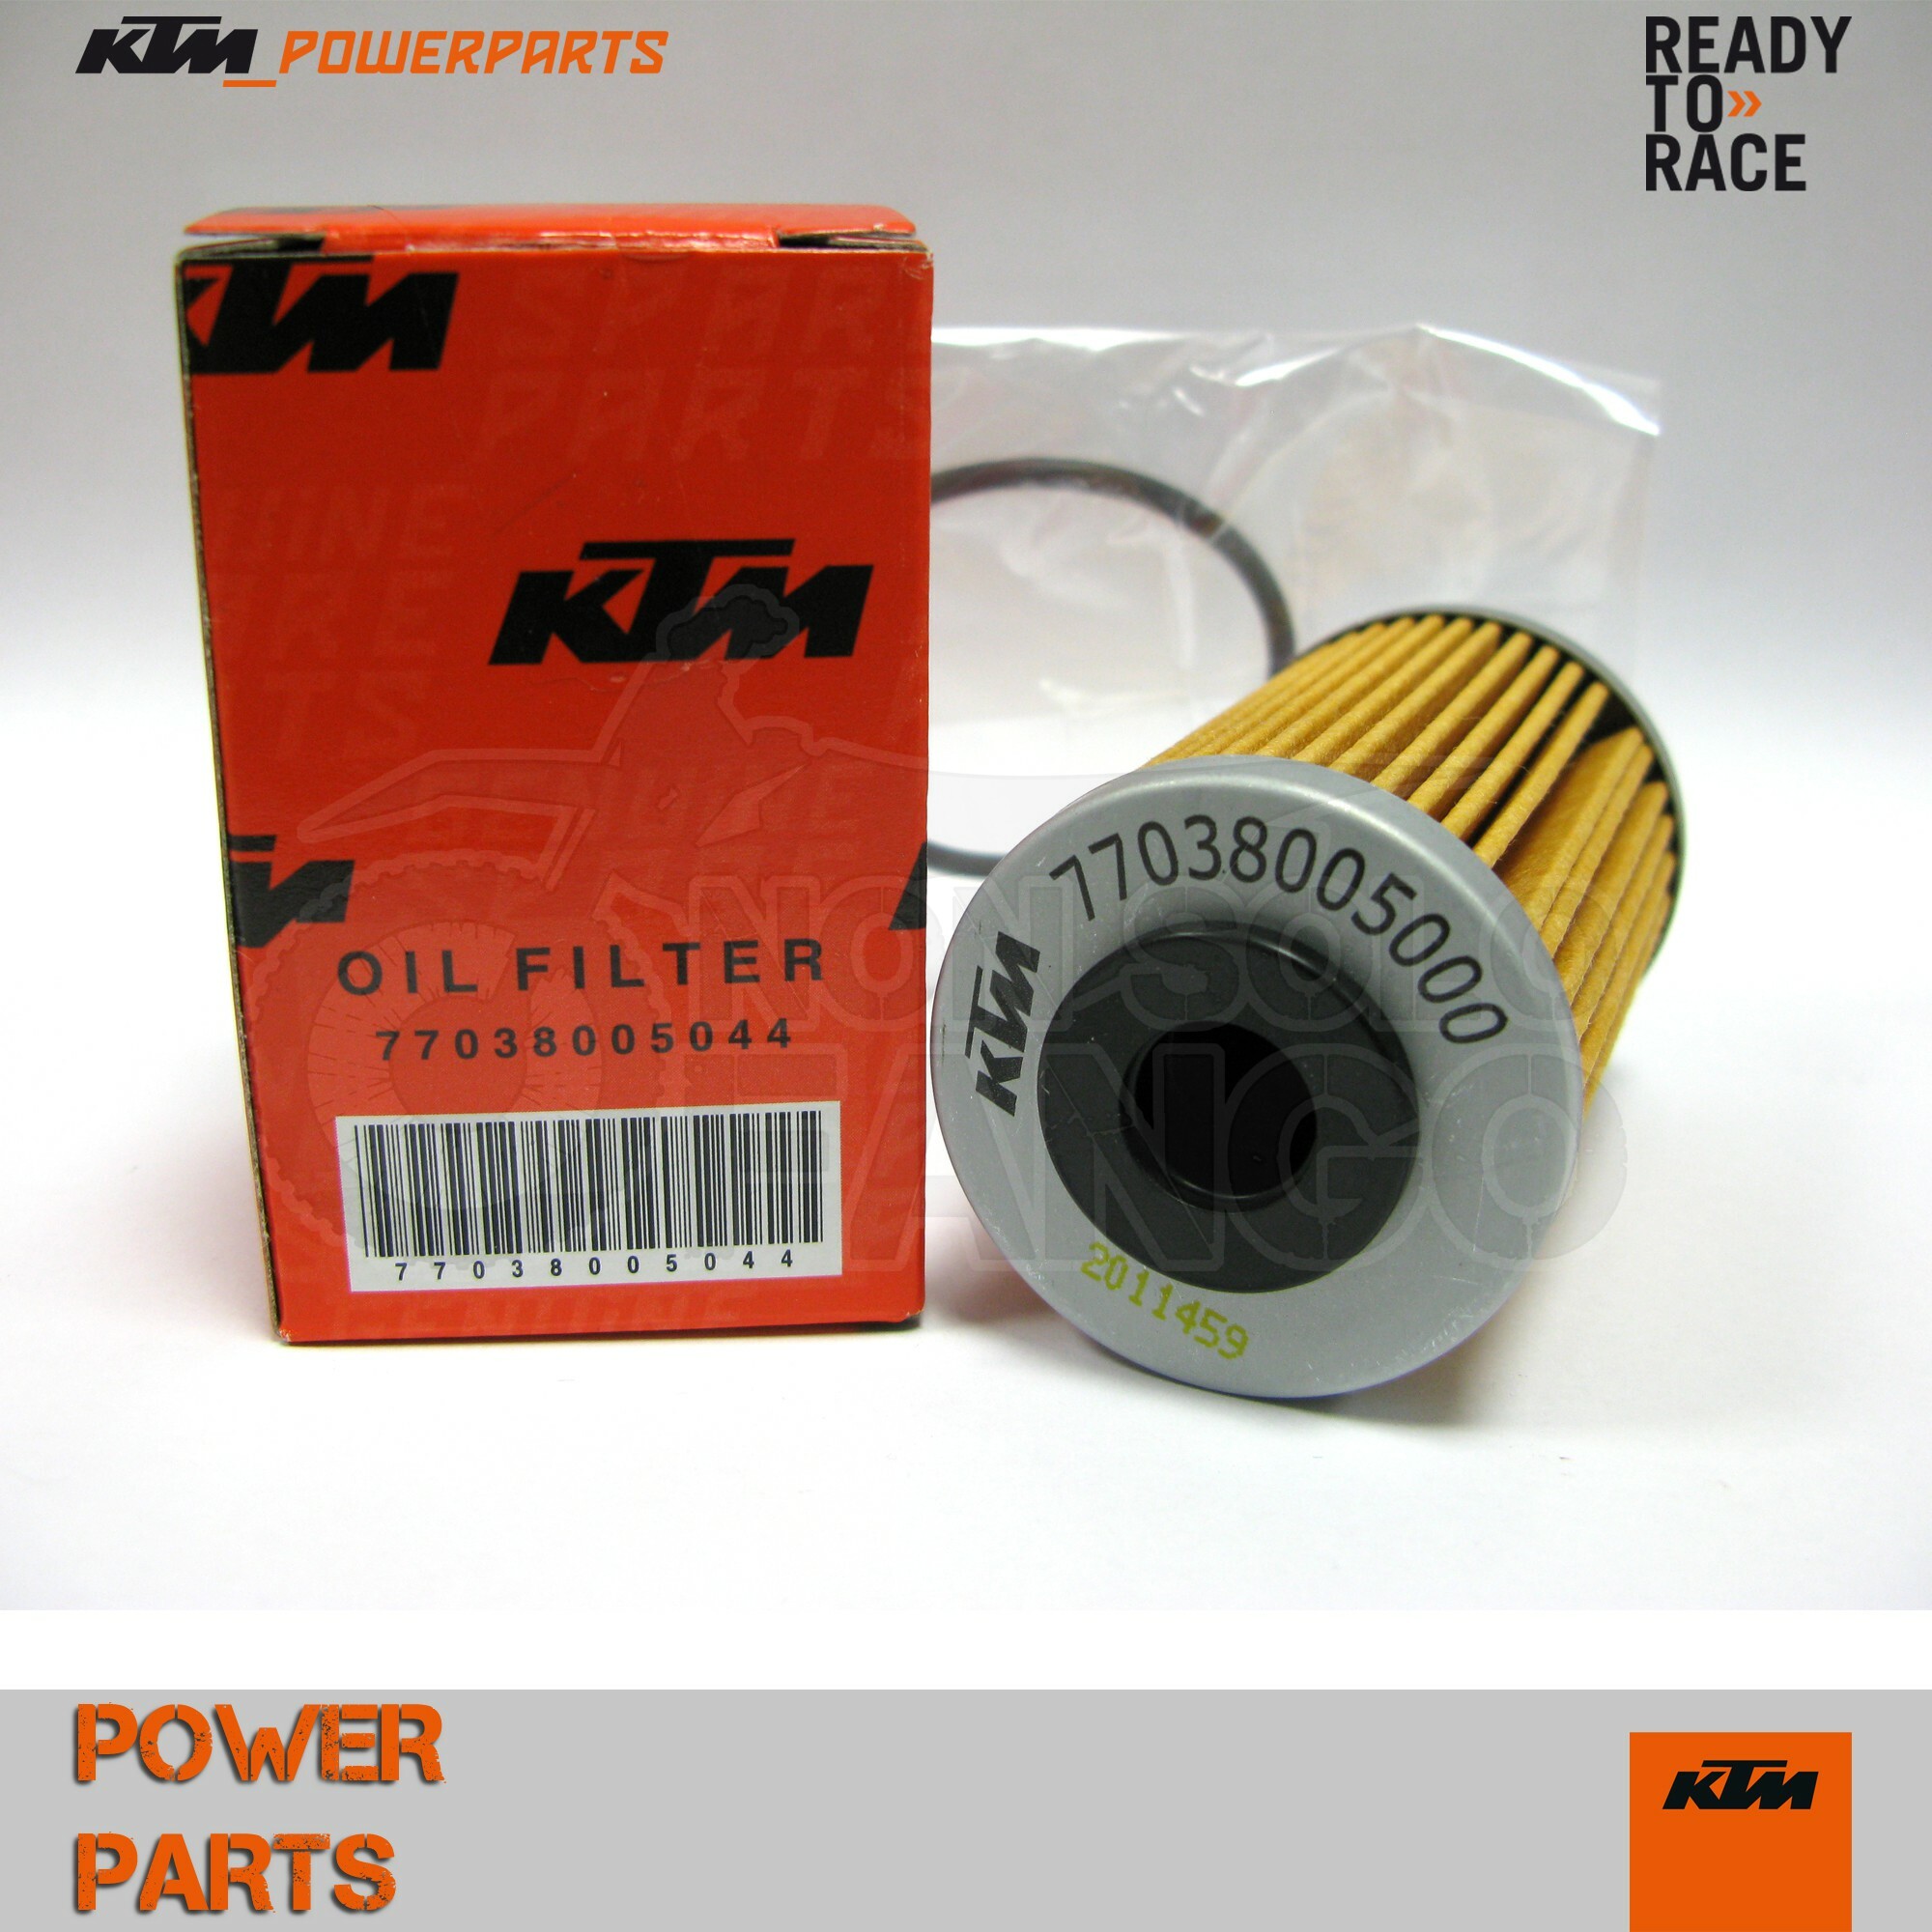 Filtro olio KTM 250 450 500 EXC ed SX-F